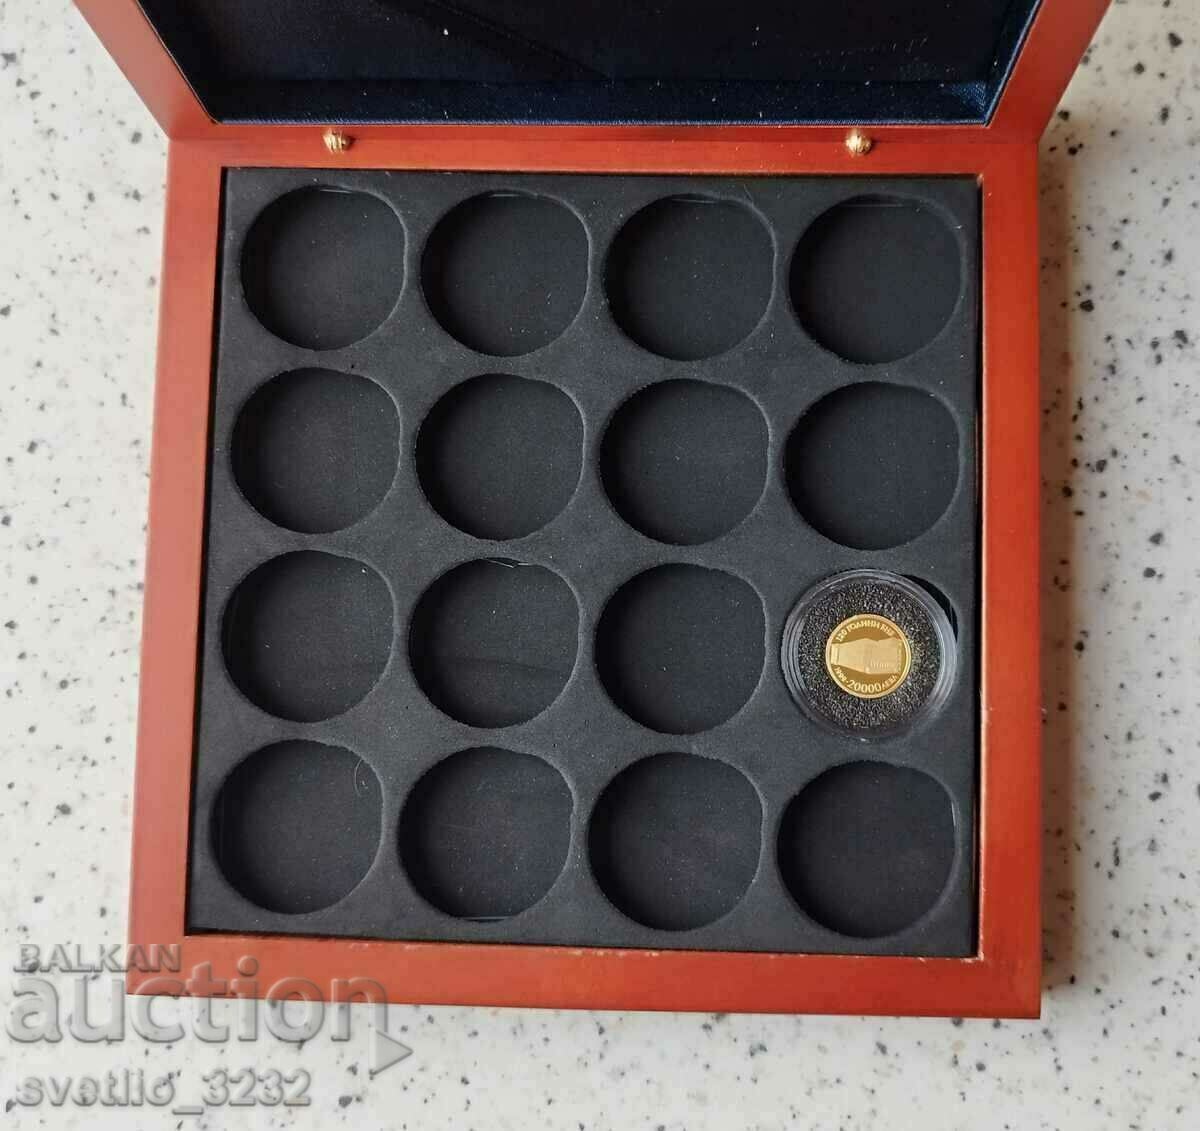 Cutie de monede